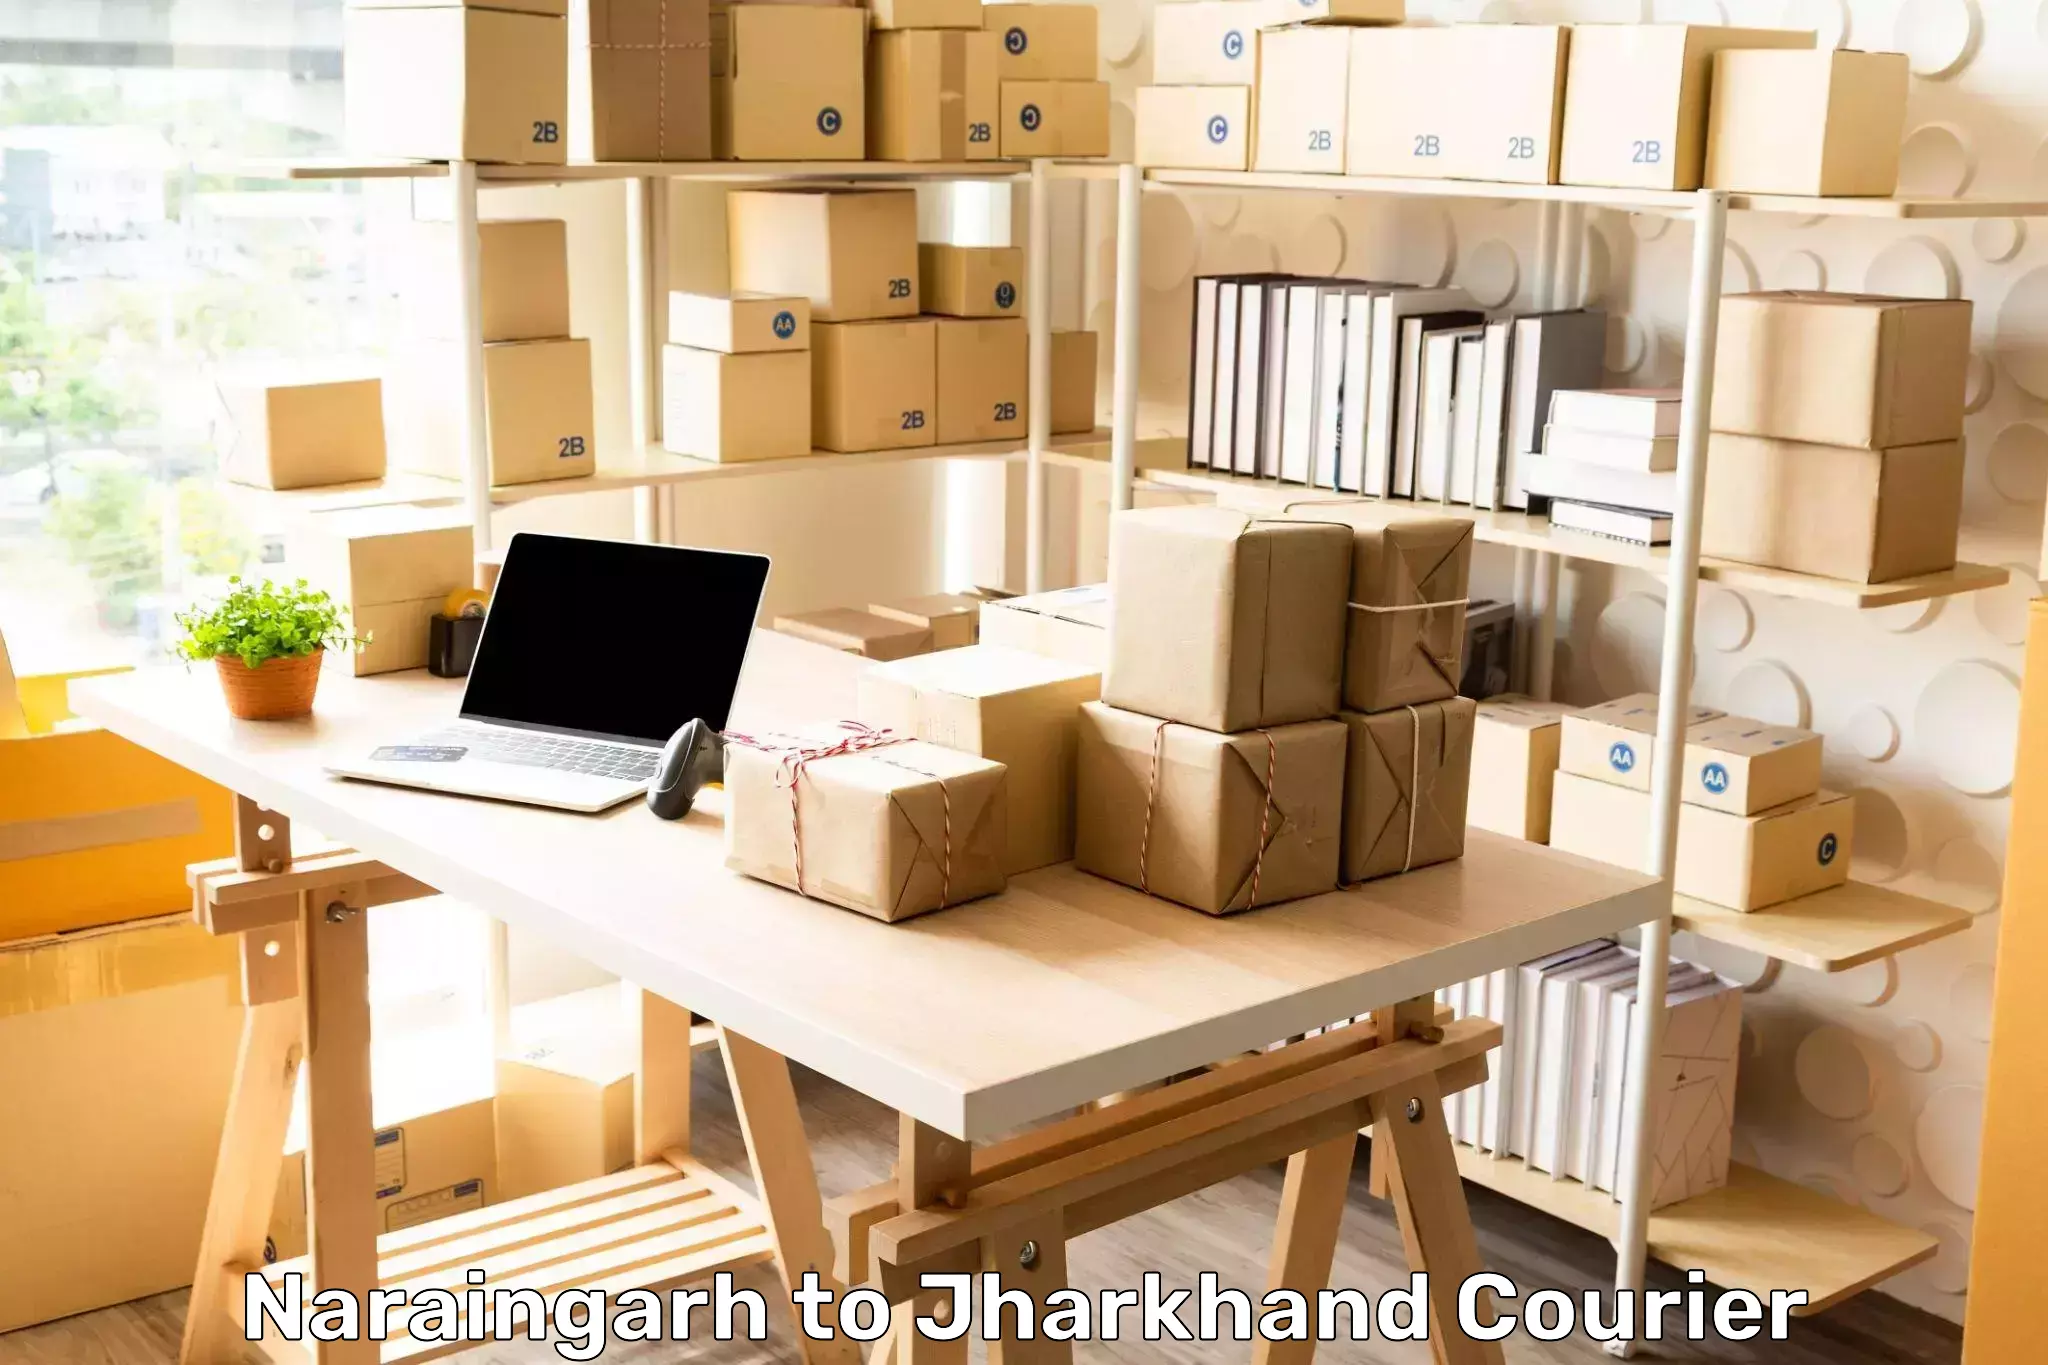 Nationwide delivery network Naraingarh to Chakradharpur